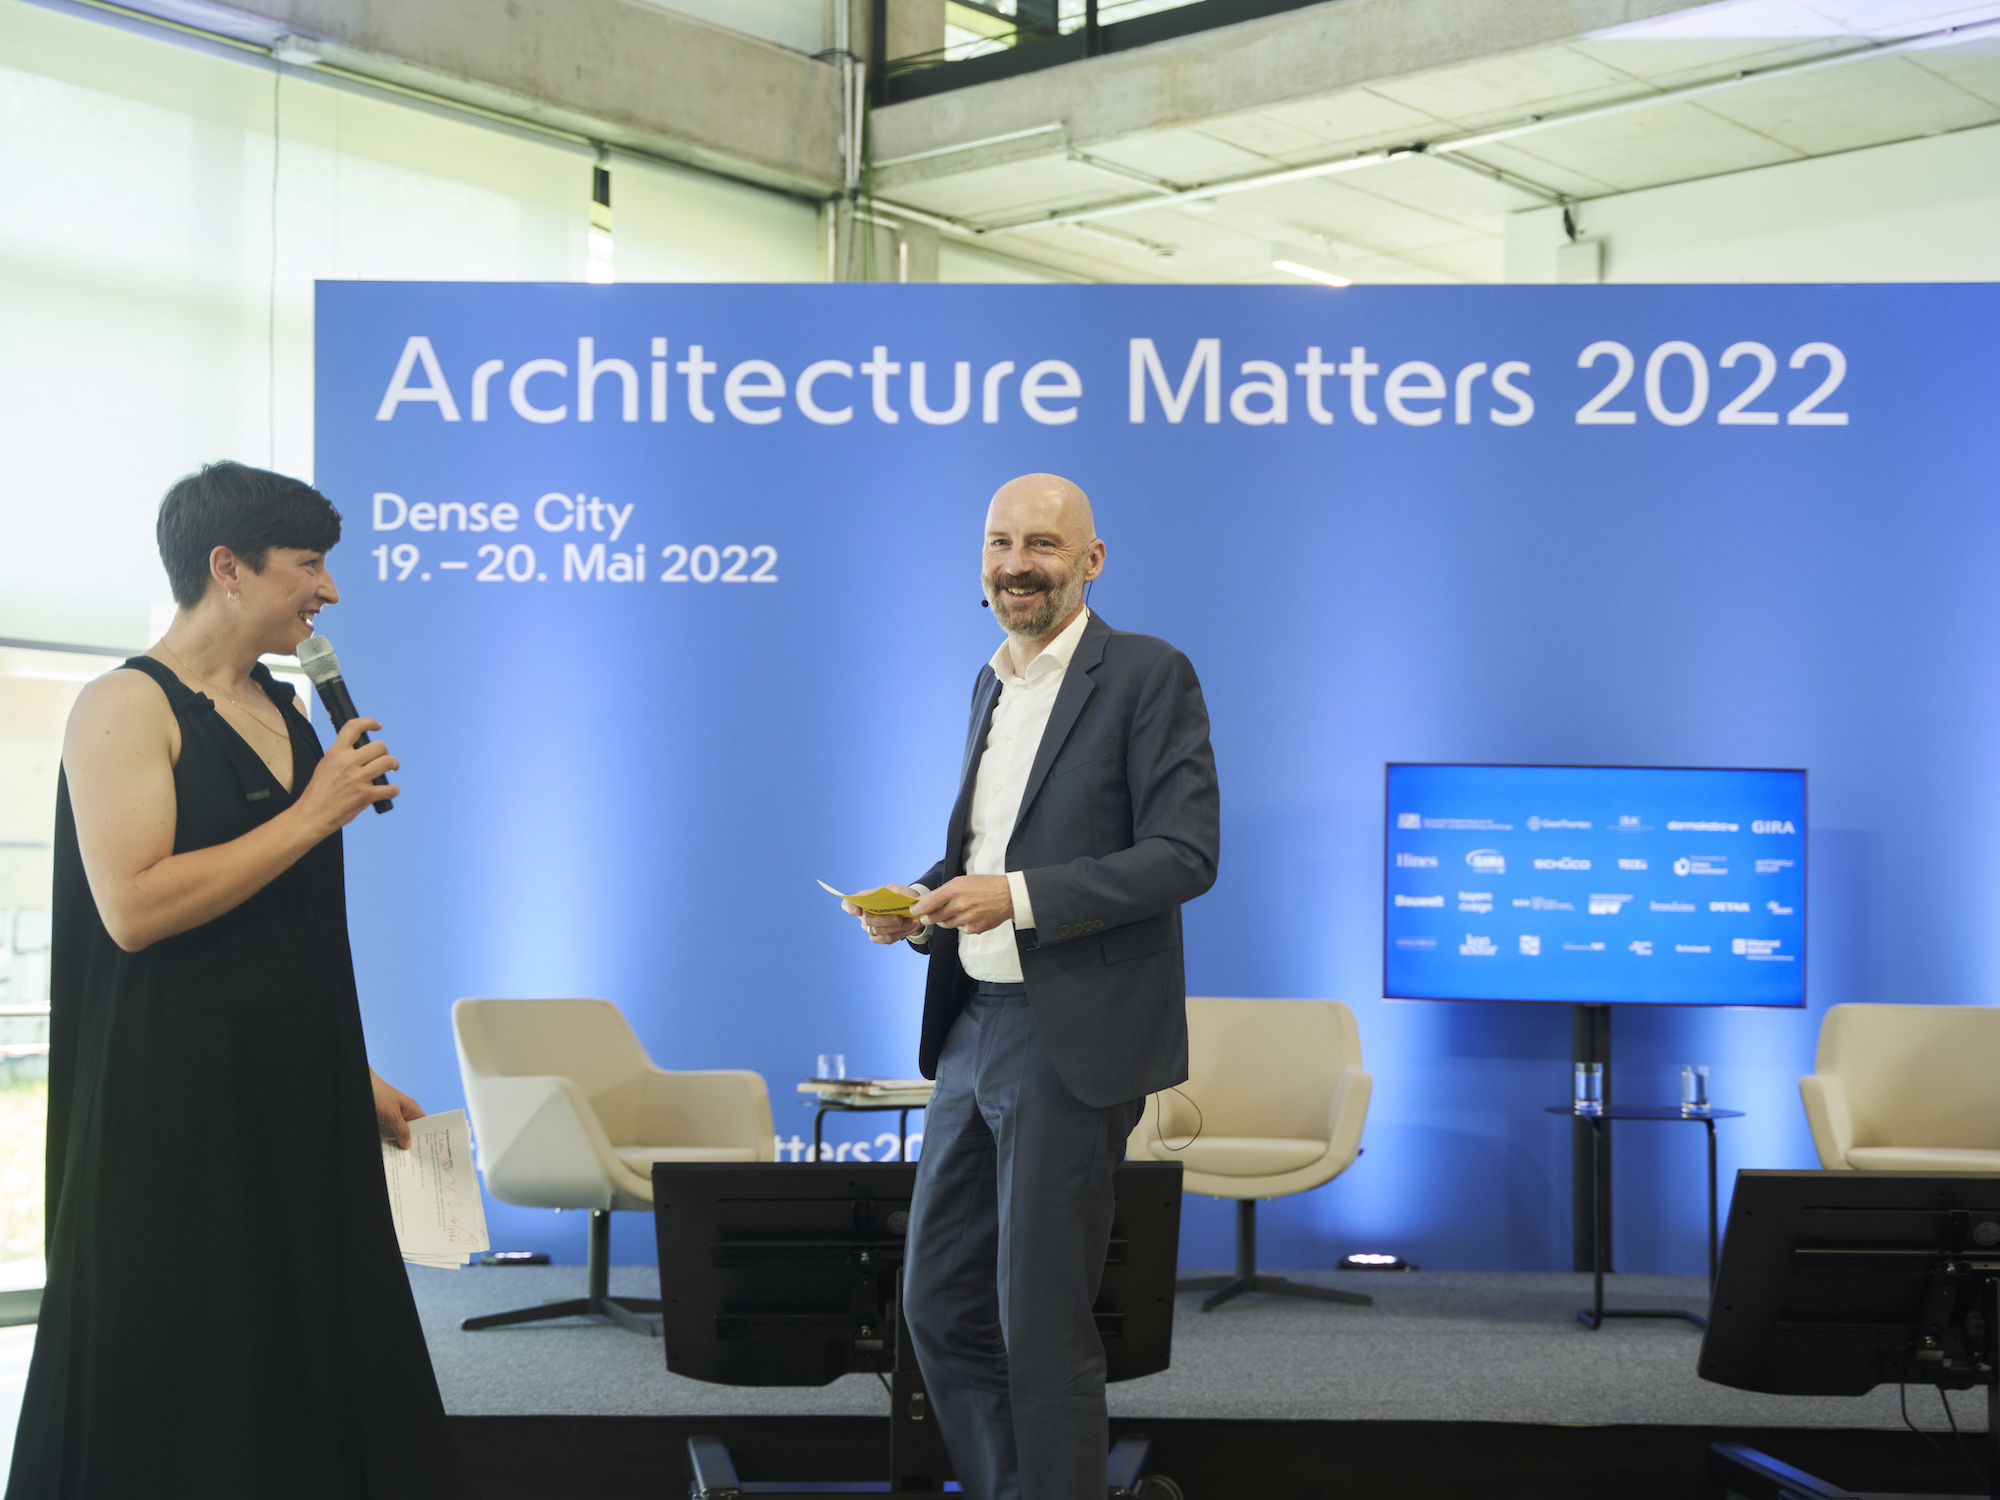 Architecture Matters 2022 Konferenz im Munich Urban Colab  Moderation Nadin Heinich, plan A und Jan Friedrich, Bauwelt Foto: Tanja Kernweiss